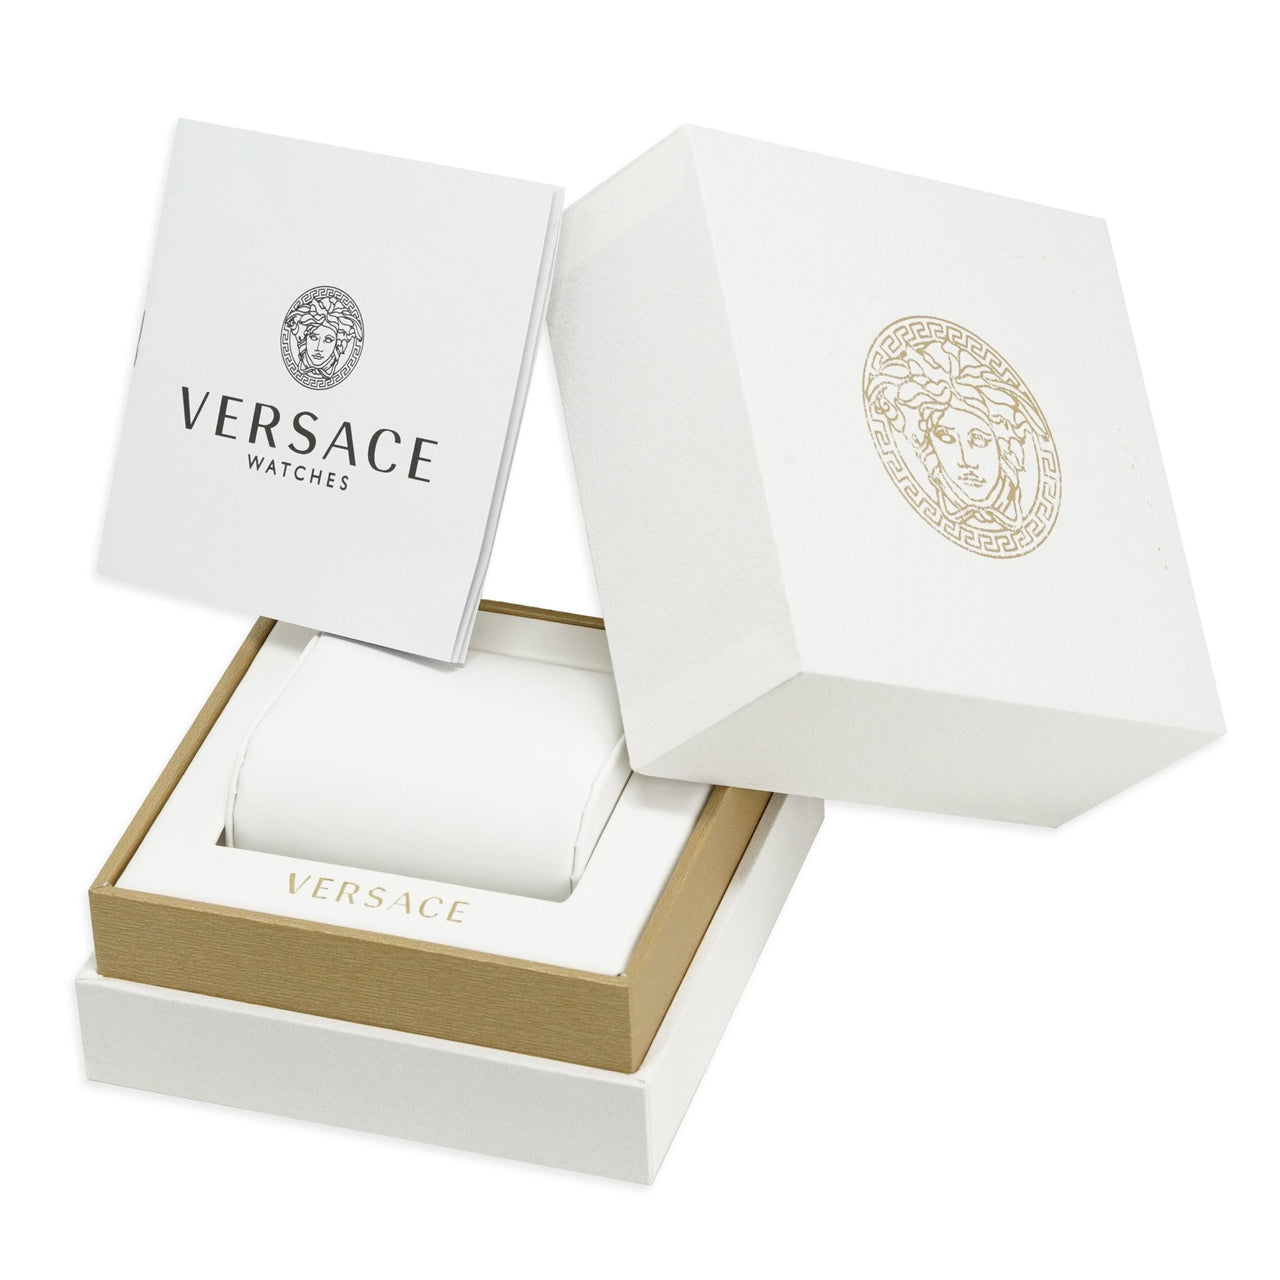 Versace Men's Watch Palazzo Empire IP Gold VERD00818 - Watches & Crystals